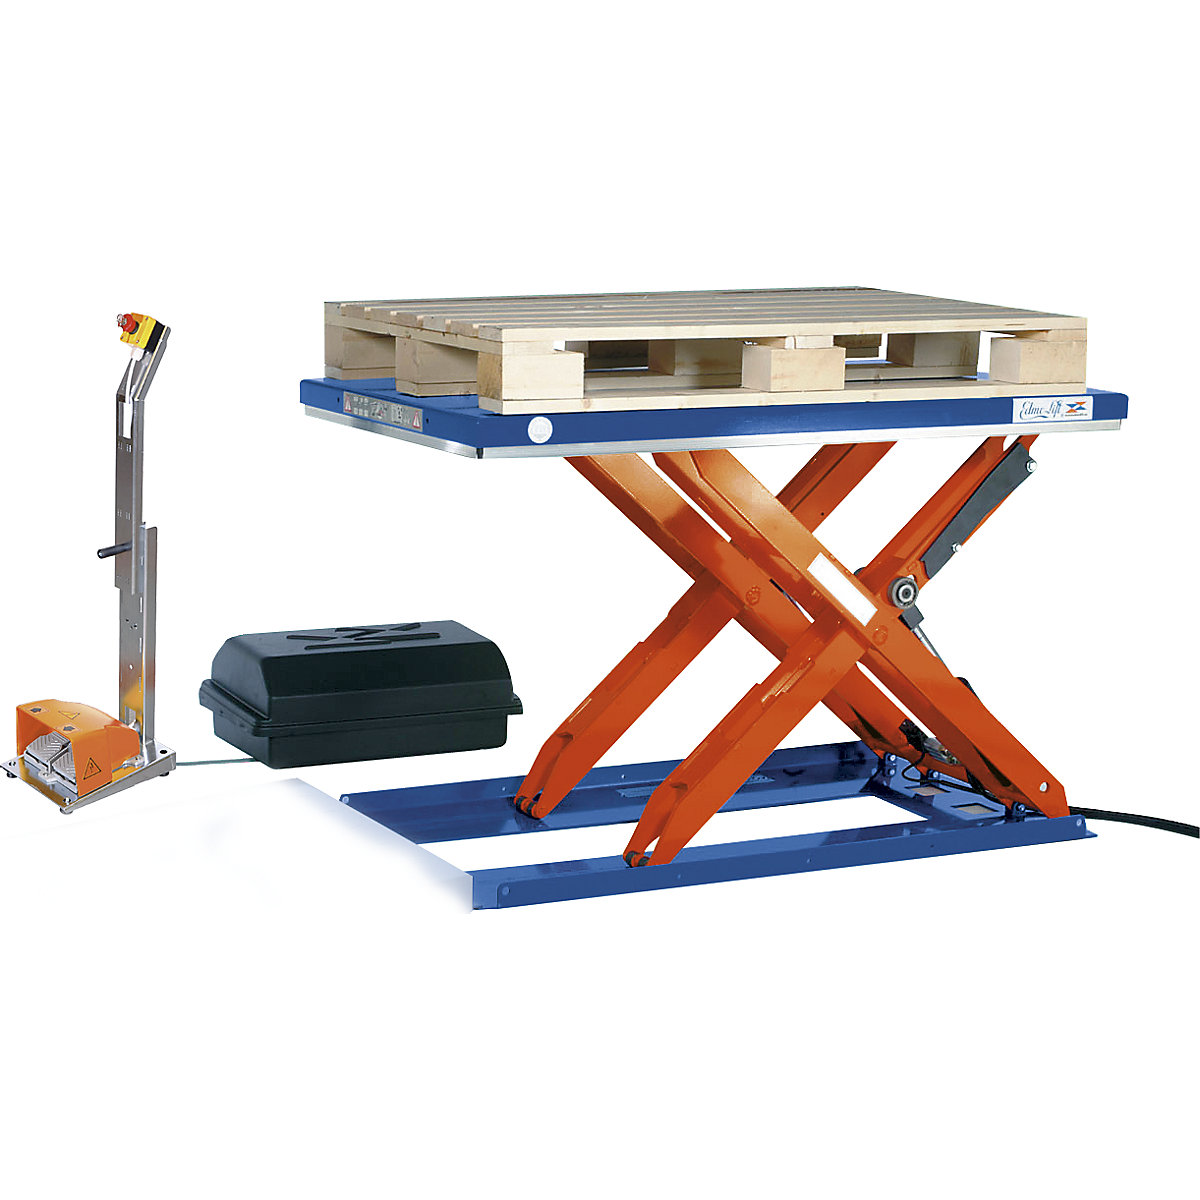 Edmolift Flachform-Hubtisch, LxB 1350 x 1000 mm, Hubbereich bis 900 mm, Plattform geschlossen, 230 V, Fuß-Bedienelement